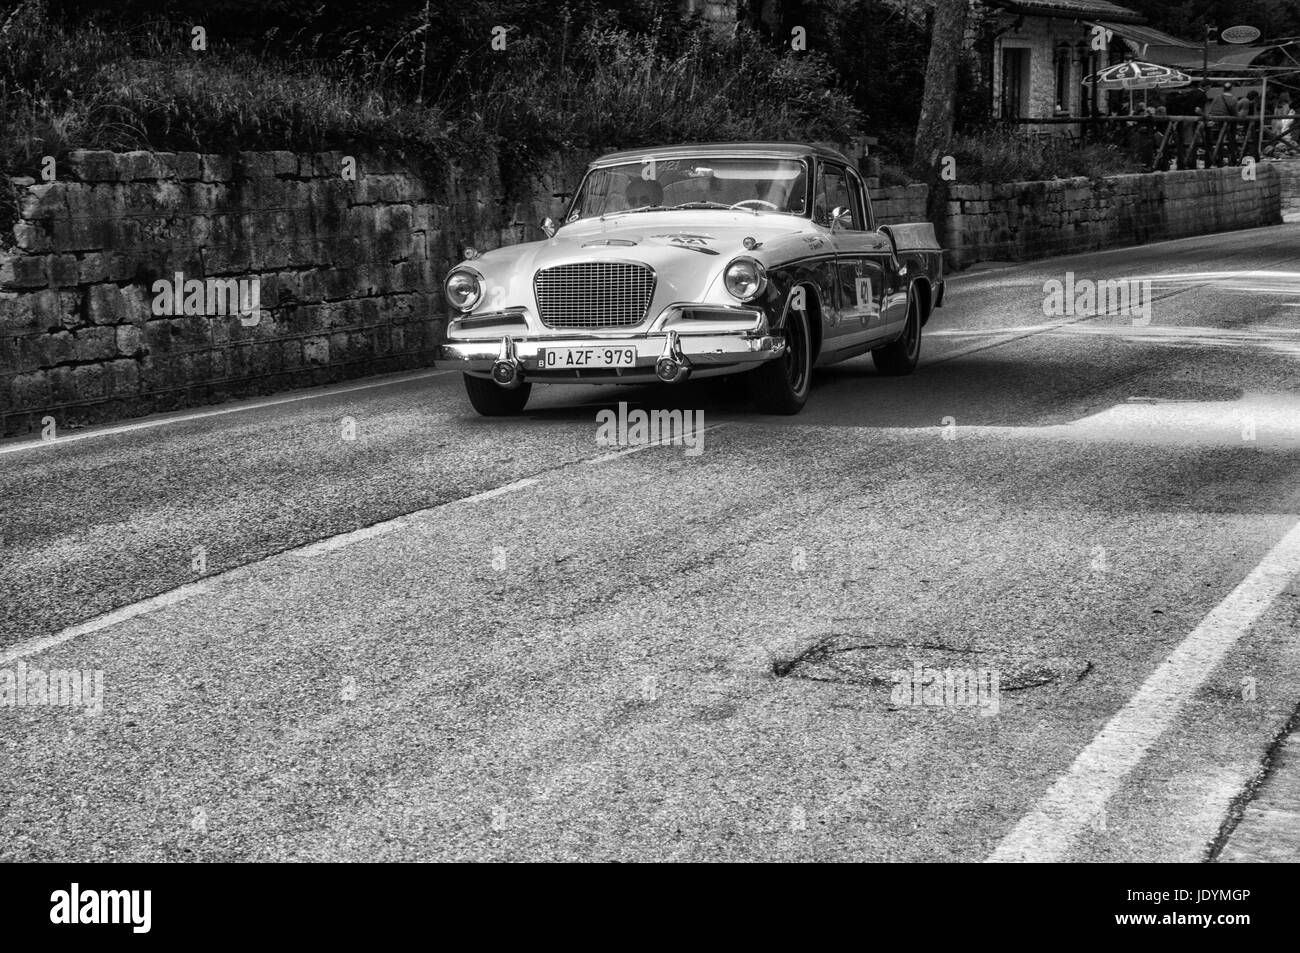 GOLA DEL FURLO, ITALIE - 19 MAI : STUDEBAKER GOLDEN HAWK 1956 sur une vieille voiture de course en rallye Mille Miglia 2017 la célèbre course historique italien (1927-1 Banque D'Images